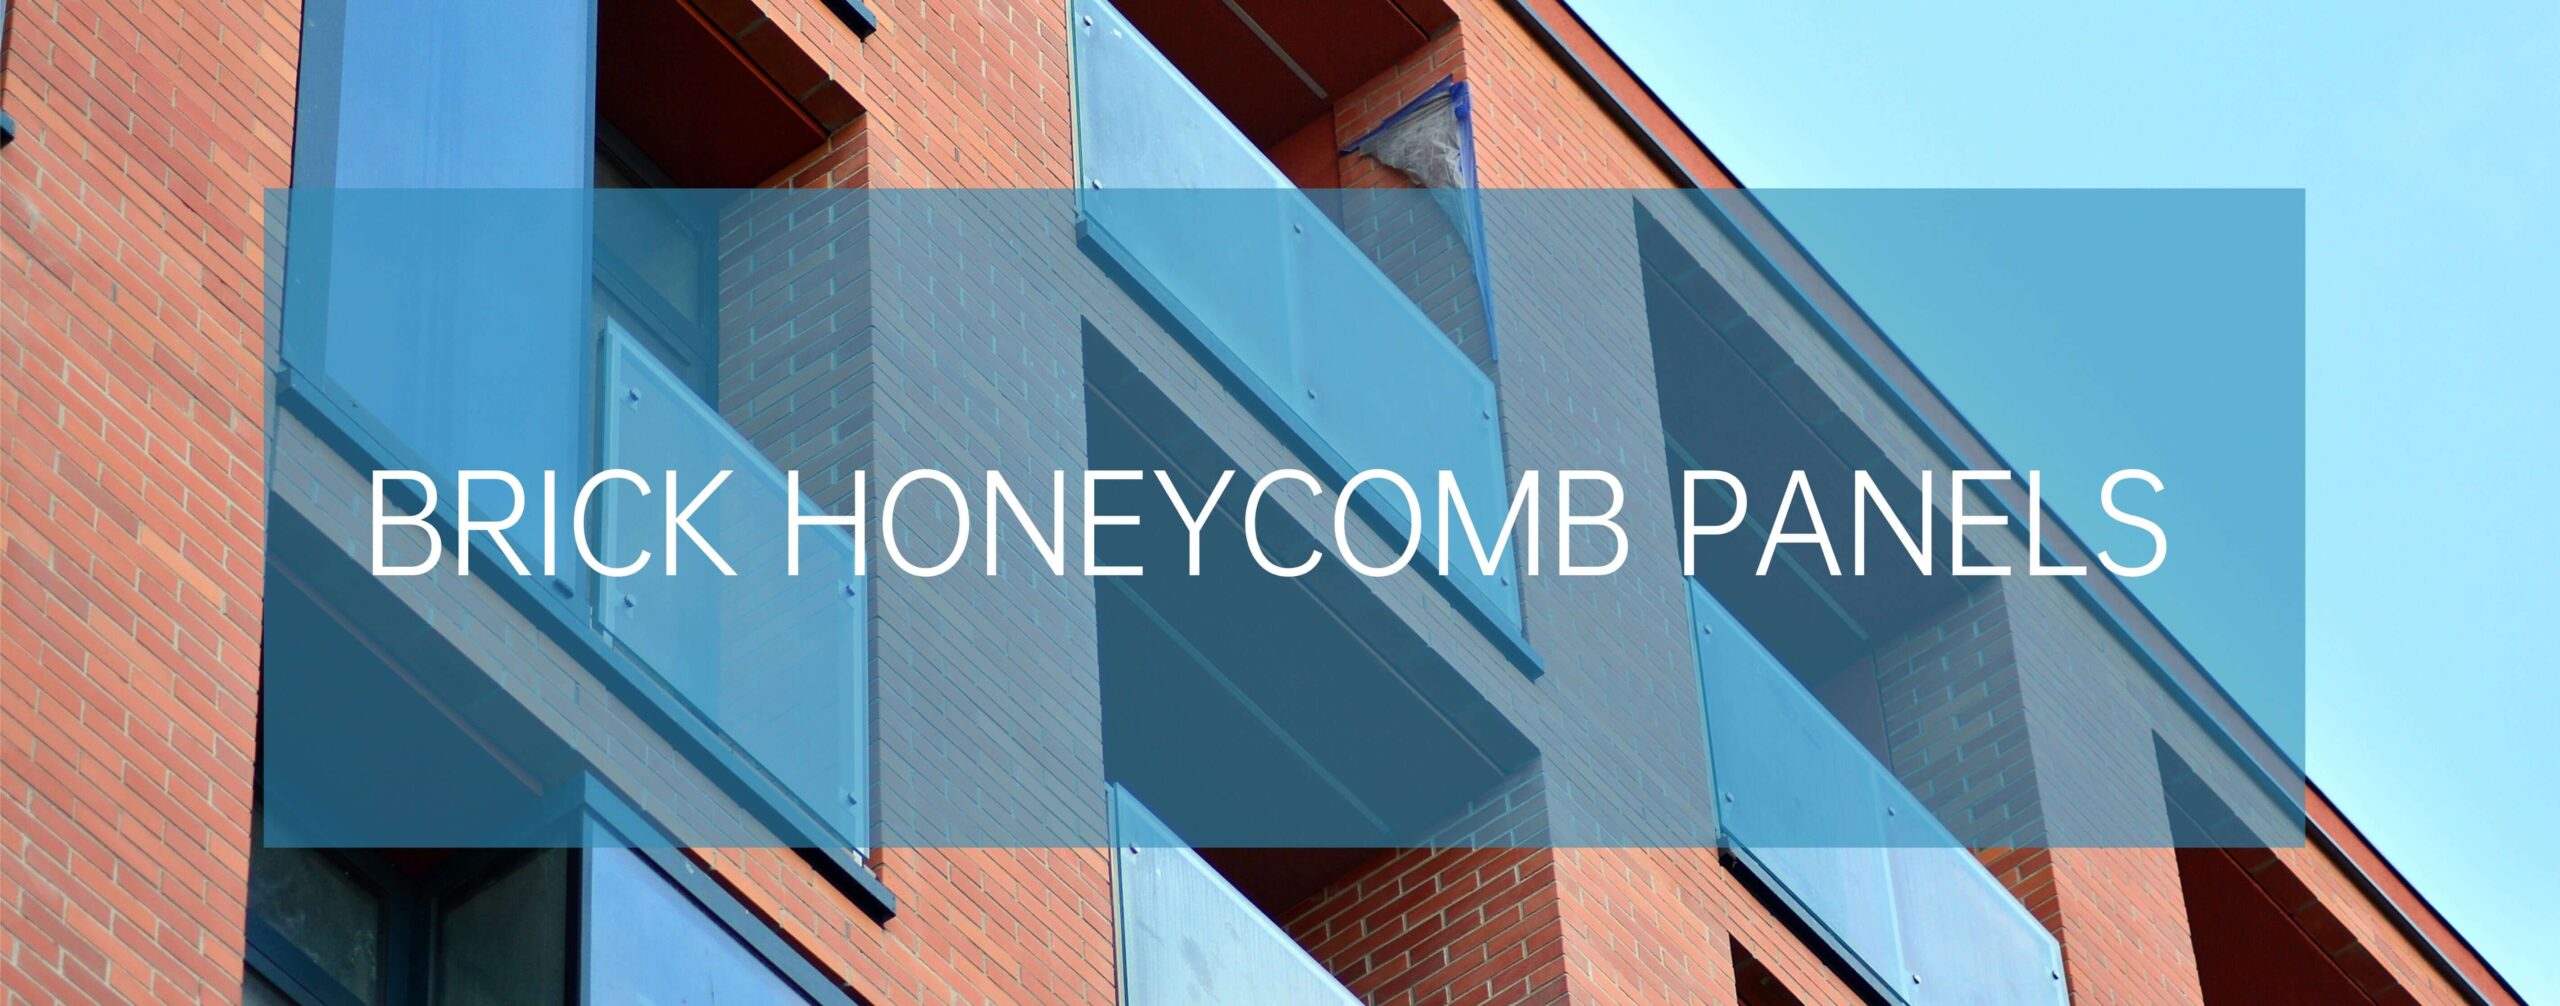 Honeycomb panels